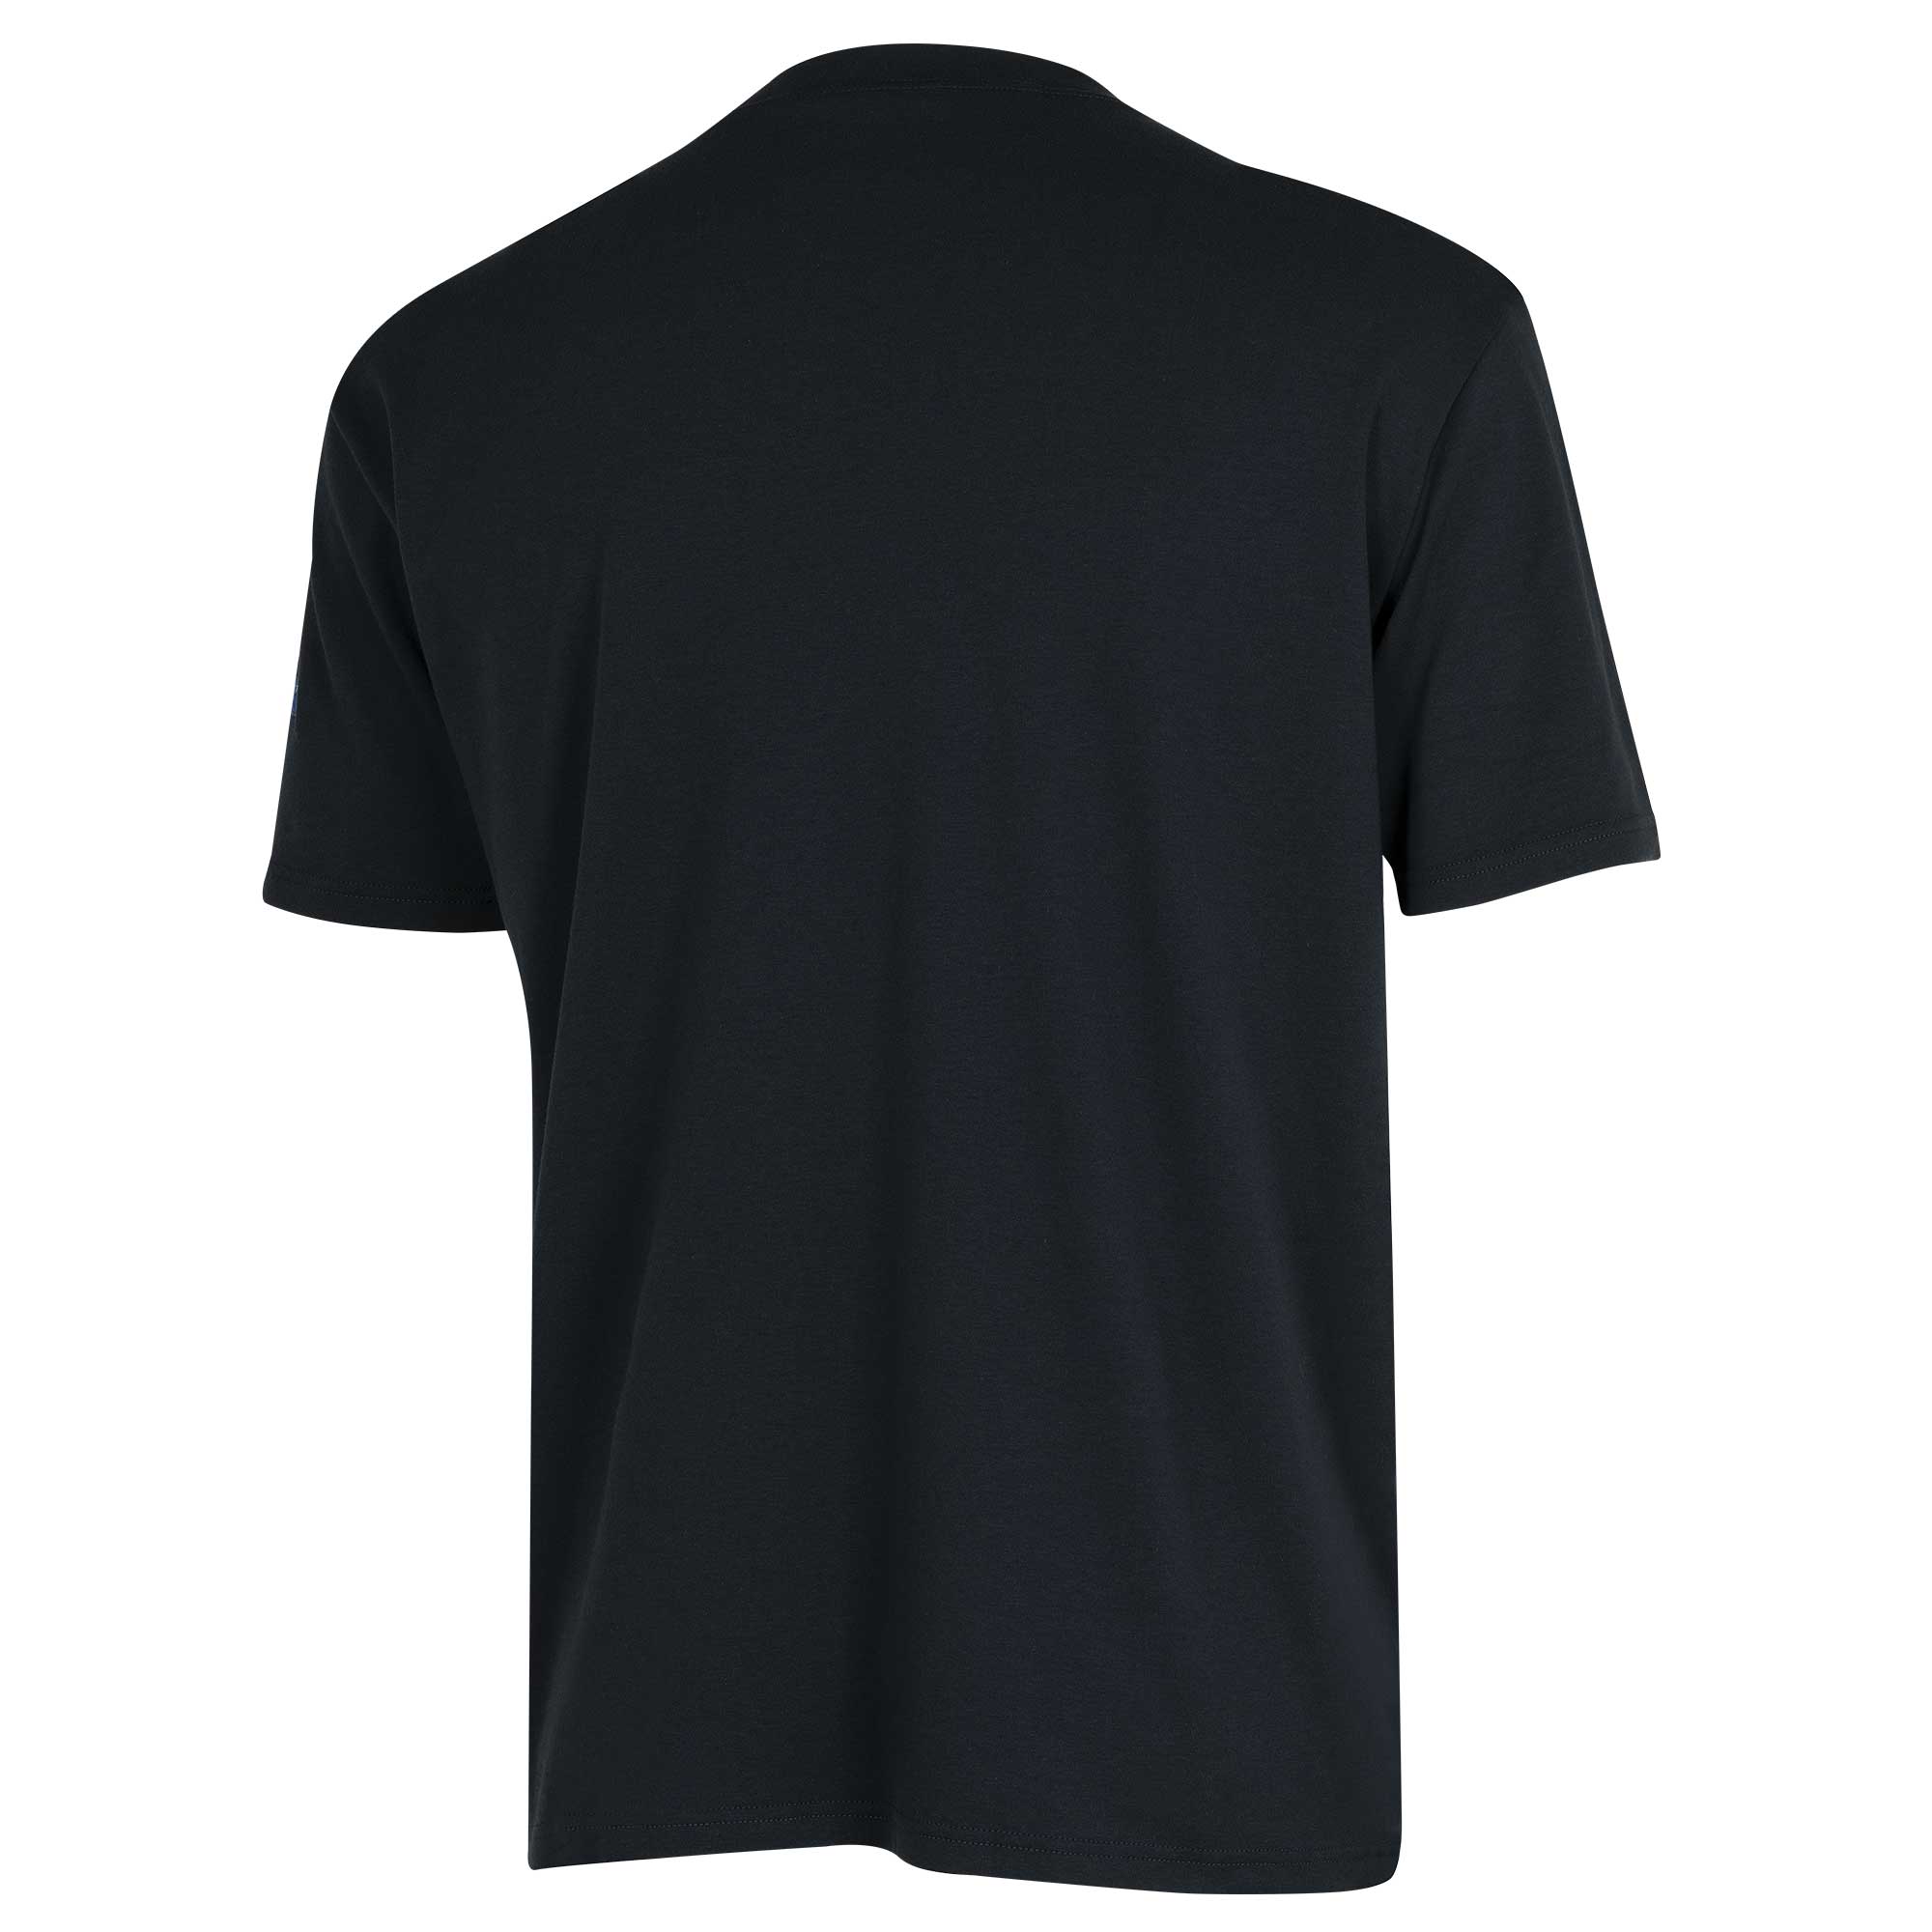 Oberon FR Cotton Short-Sleeved T-Shirt ZFI109